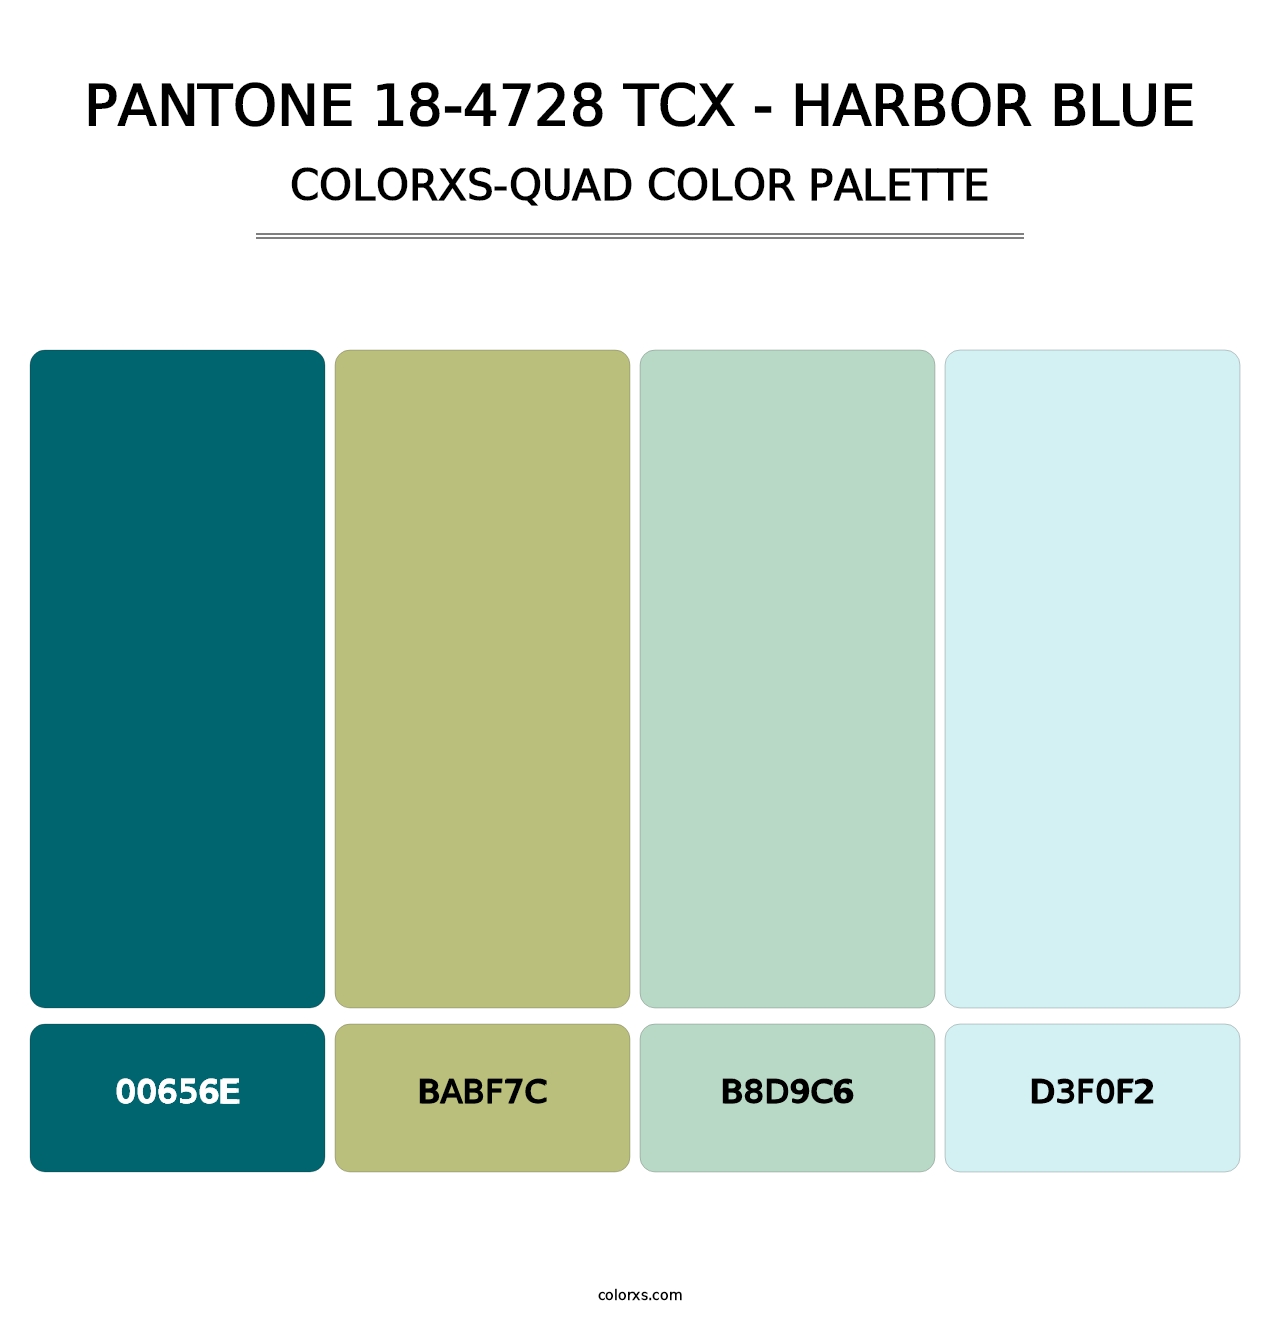 PANTONE 18-4728 TCX - Harbor Blue - Colorxs Quad Palette